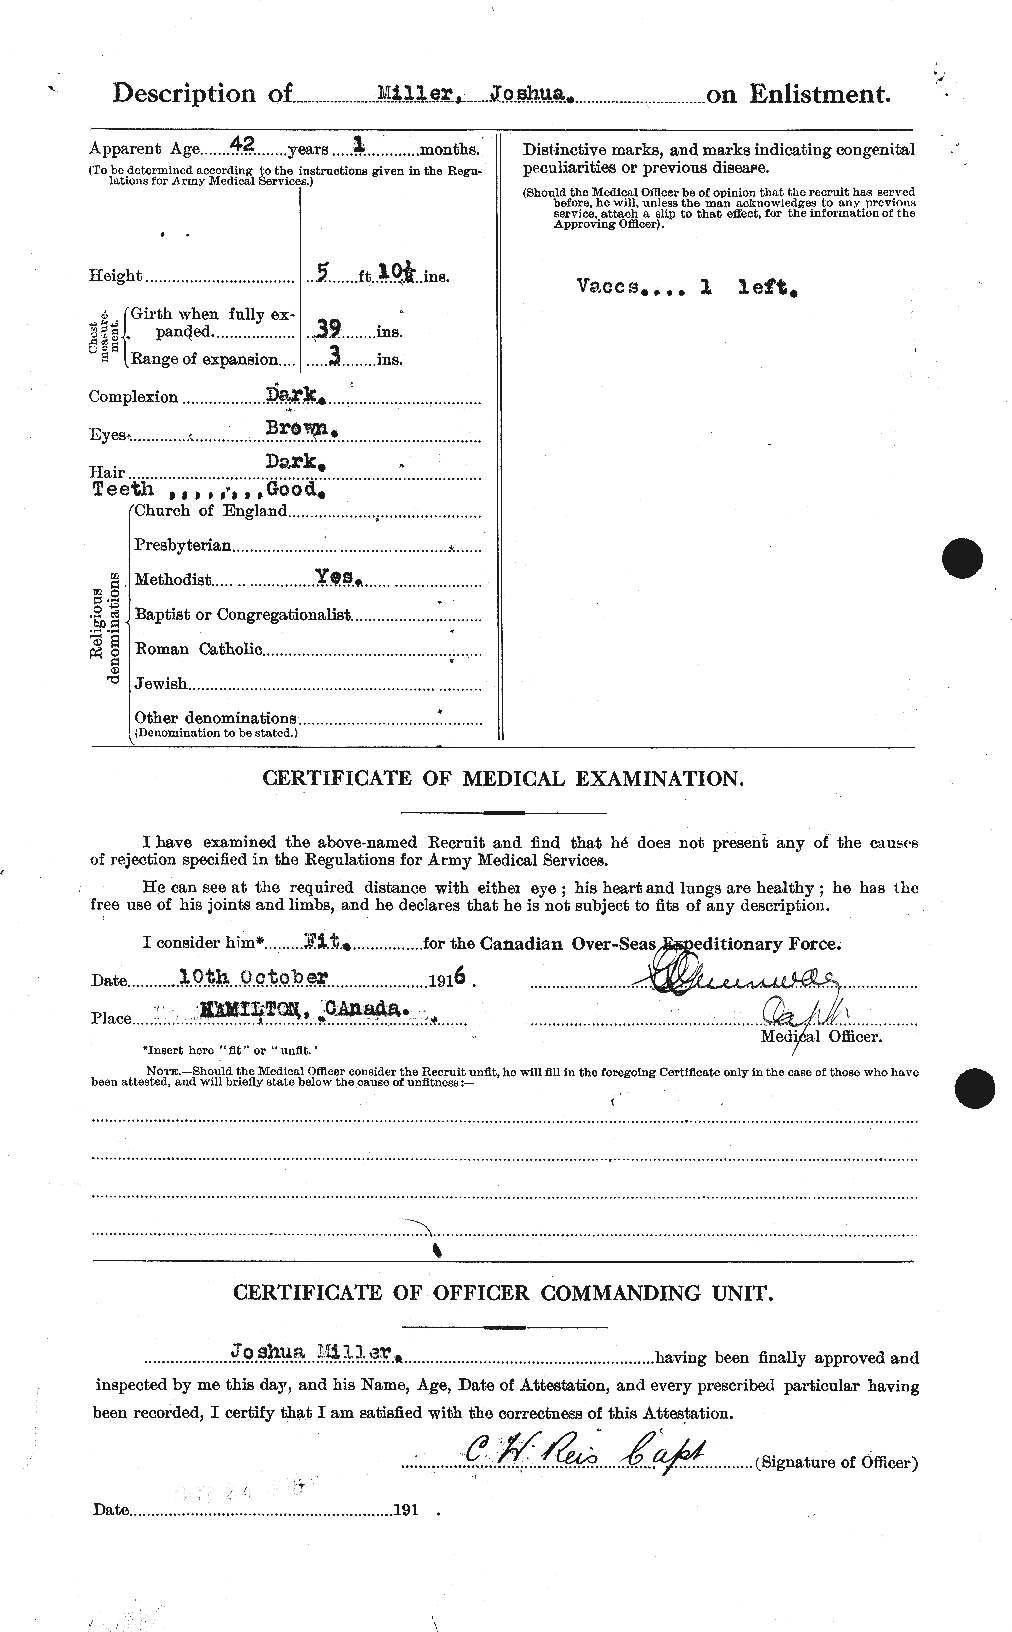 Dossiers du Personnel de la Première Guerre mondiale - CEC 499475b